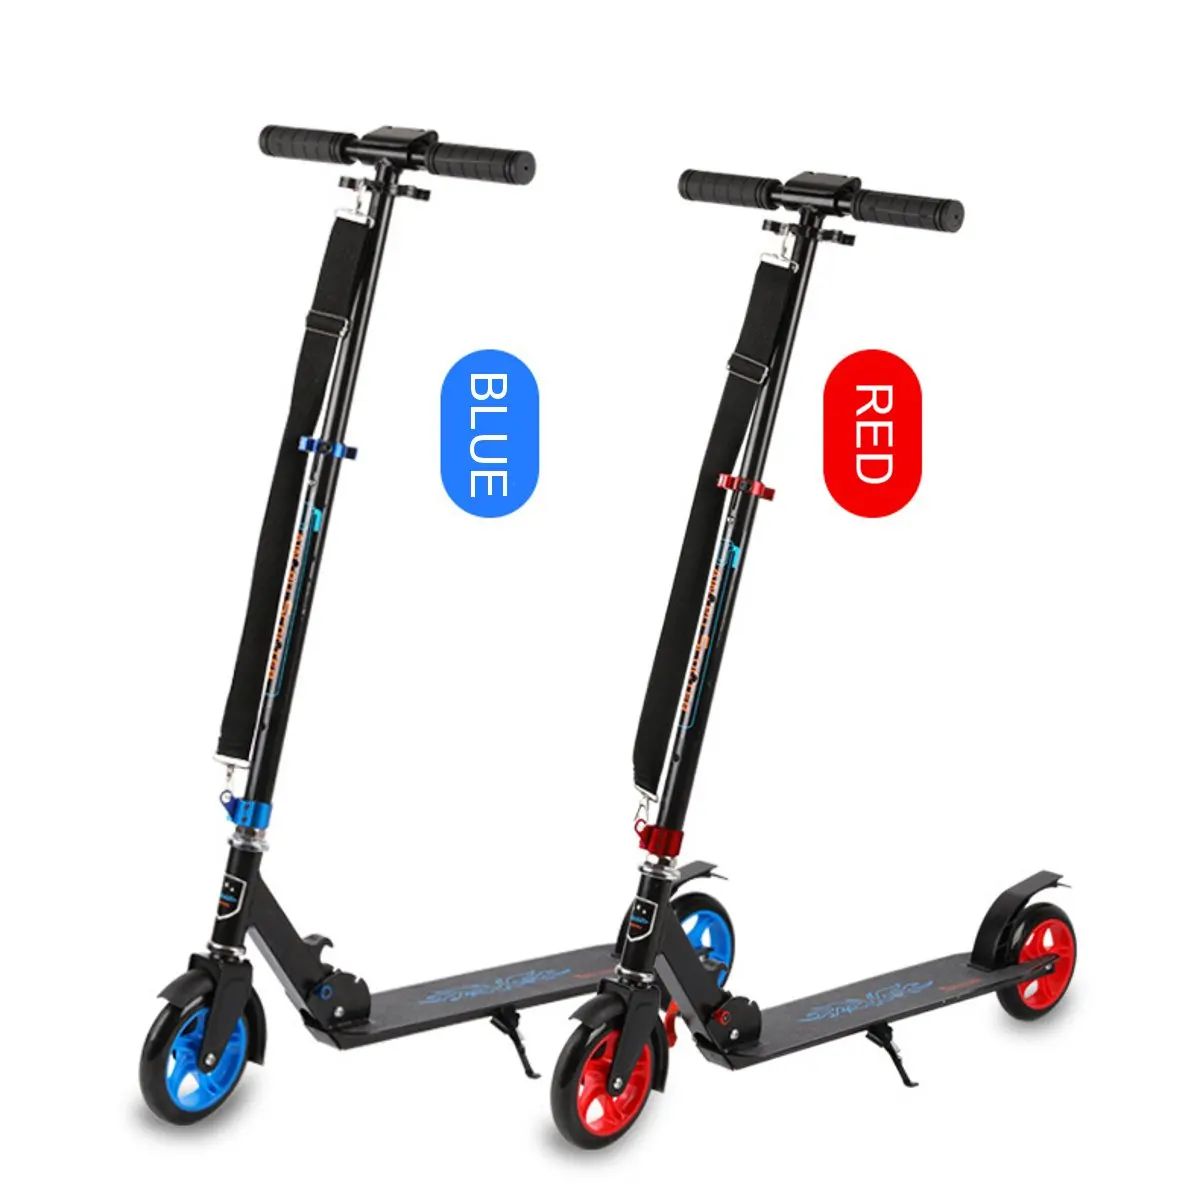 Регулируемый по высоте самокат для взрослых складной скейтборд из алюминиевого сплава для бездорожья, езды на заднем тормозе 2 колеса скутеры 100 кг синий/красный